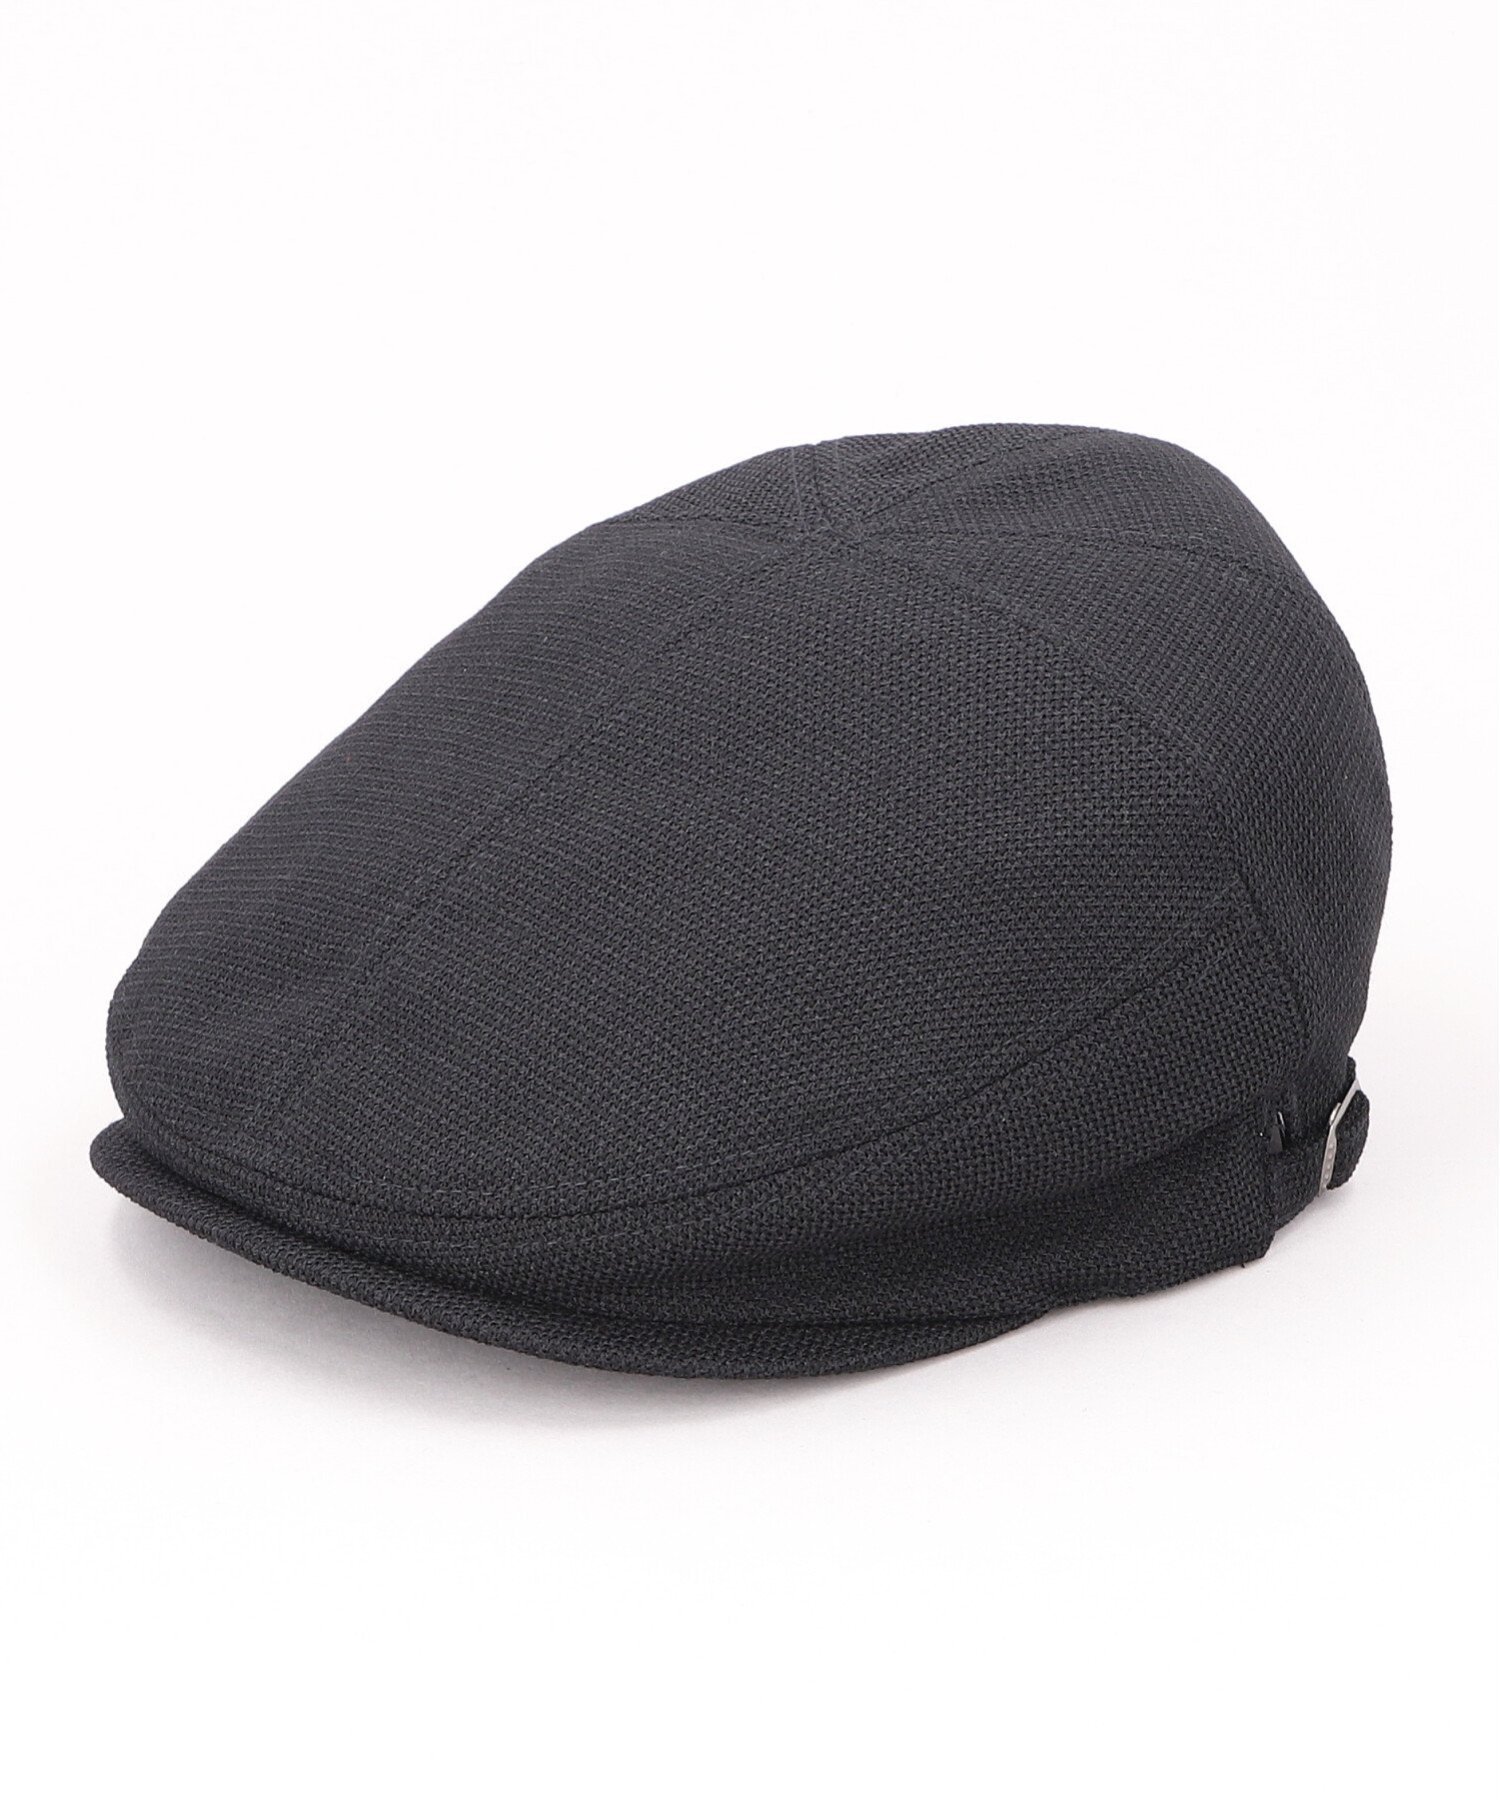 カシラ 帽子 メンズ CA4LA AST HUNTI5 カシラ 帽子 ハンチング・ベレー帽 ブラック グレー ホワイト【送料無料】